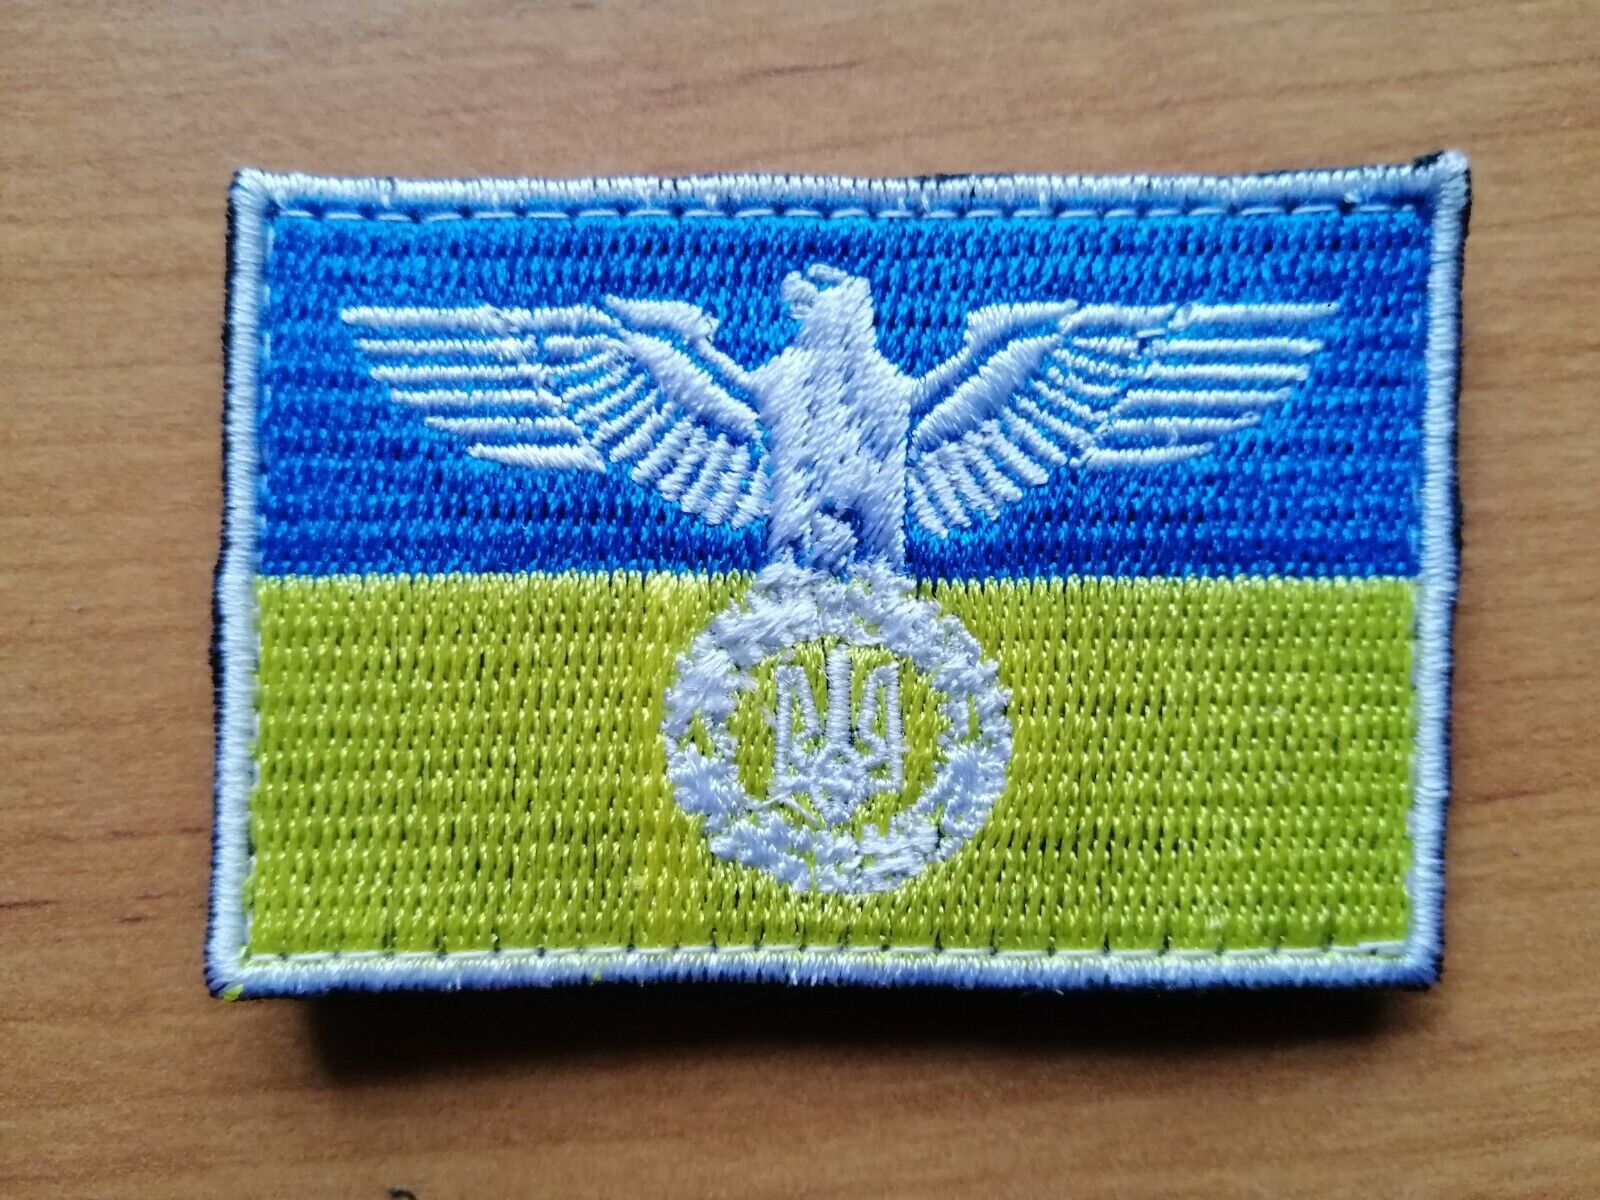 UKRAINIAN ARMY PATCH